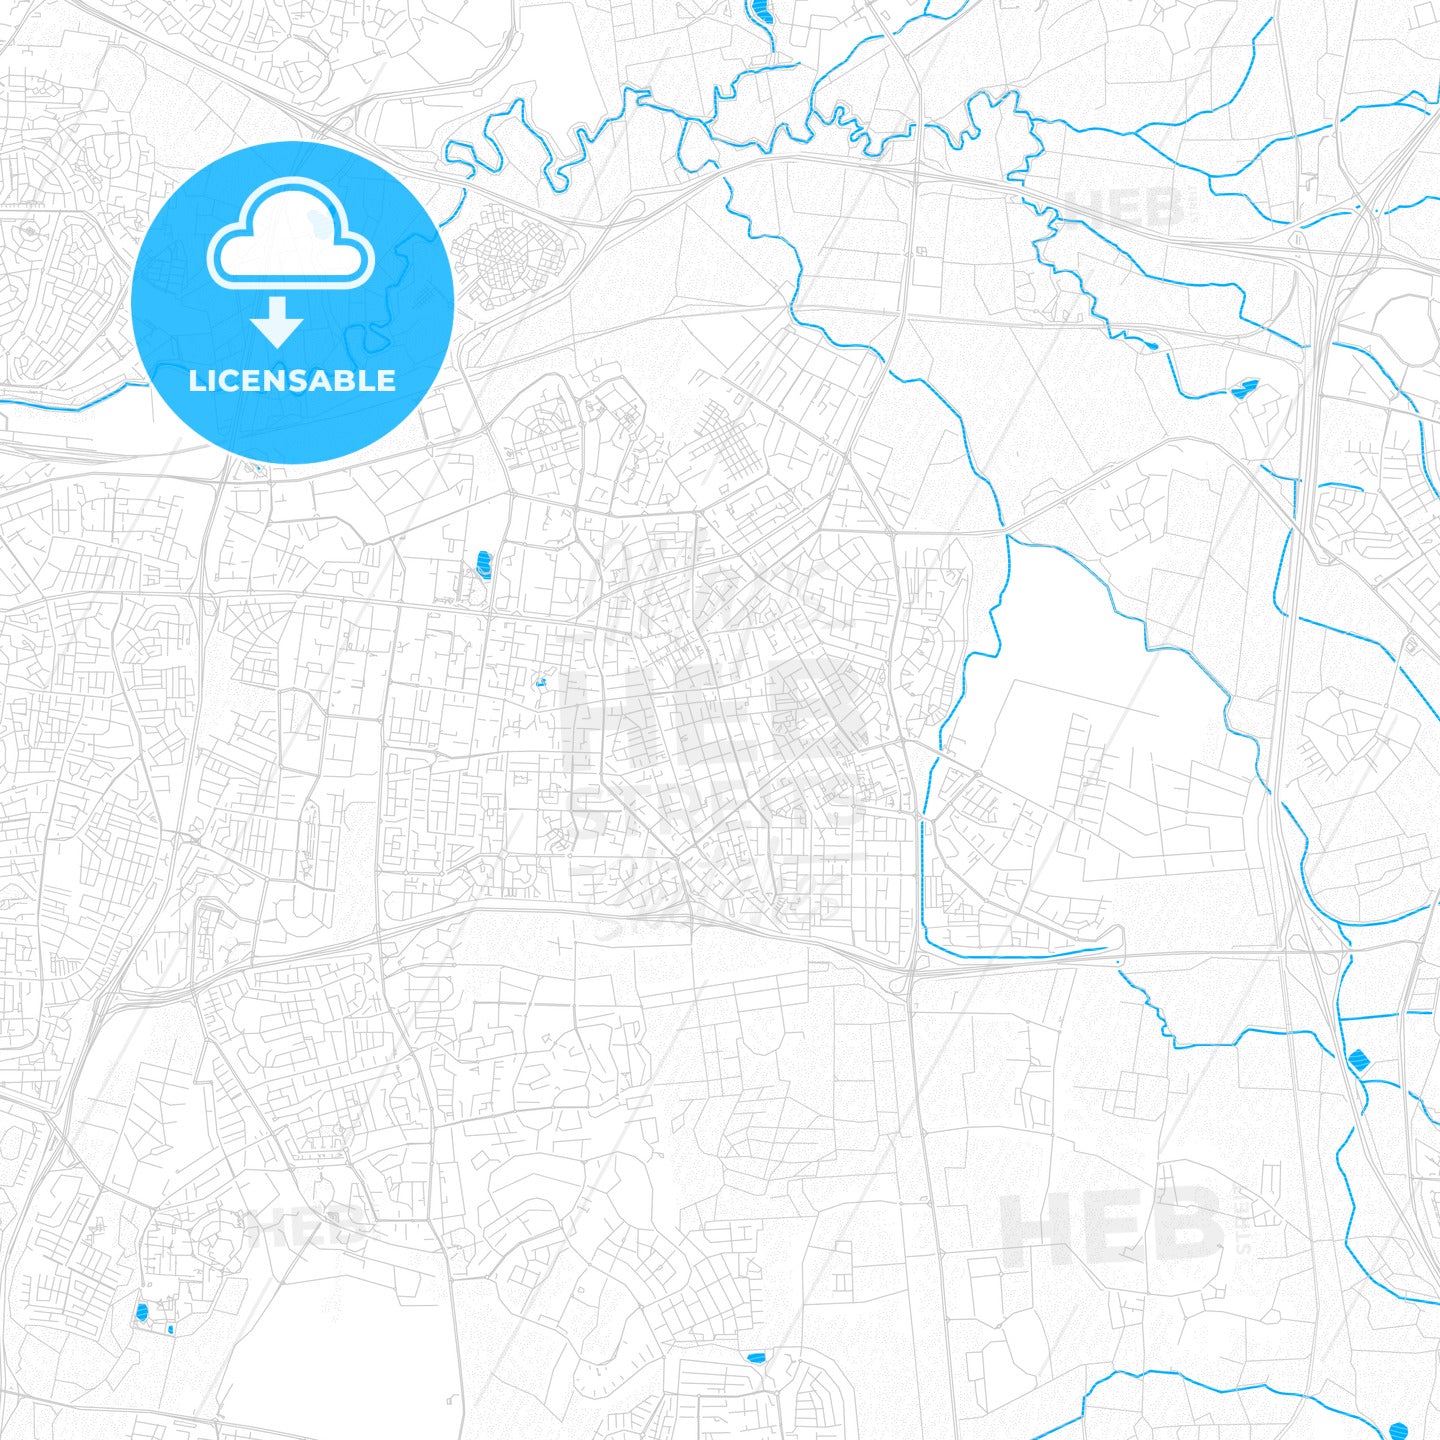 Petah Tikva, Israel PDF vector map with water in focus